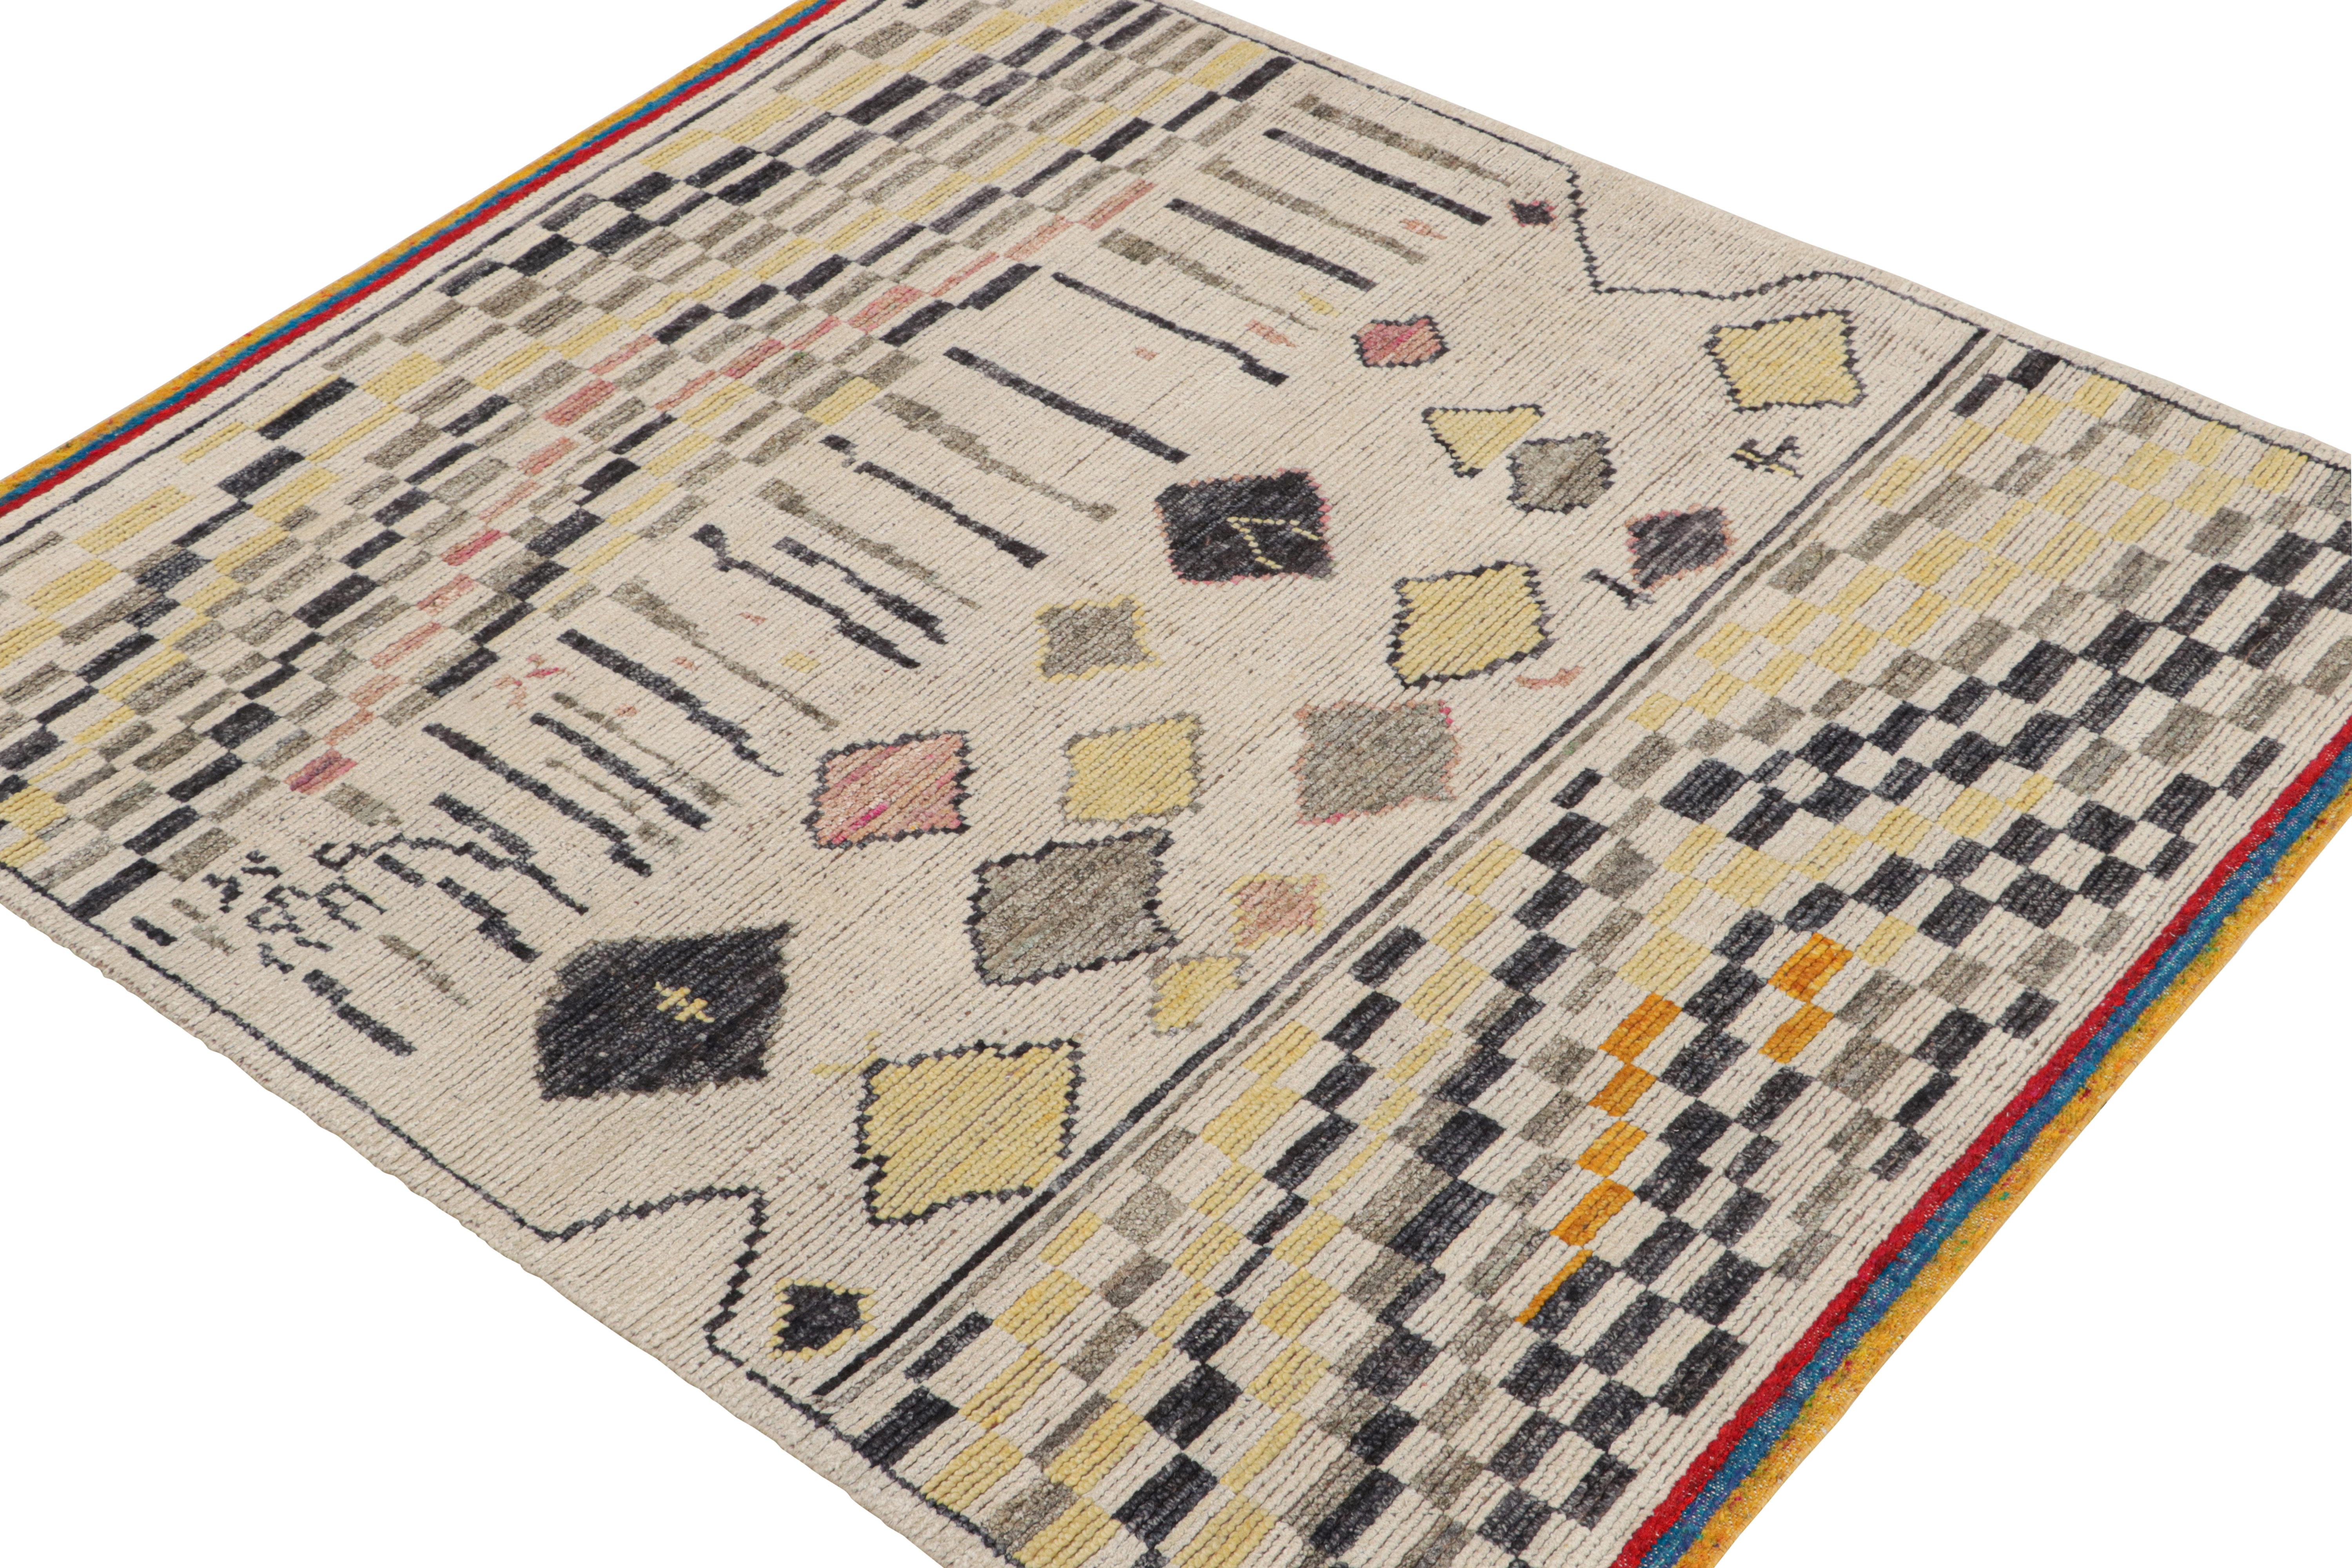 Ce tapis contemporain 6x7 est le dernier né de la nouvelle collection marocaine de Rug & Kilim, une version audacieuse de ce style emblématique. Noué à la main dans un mélange de laine, de soie et de coton.
Plus loin dans la conception :
Le design